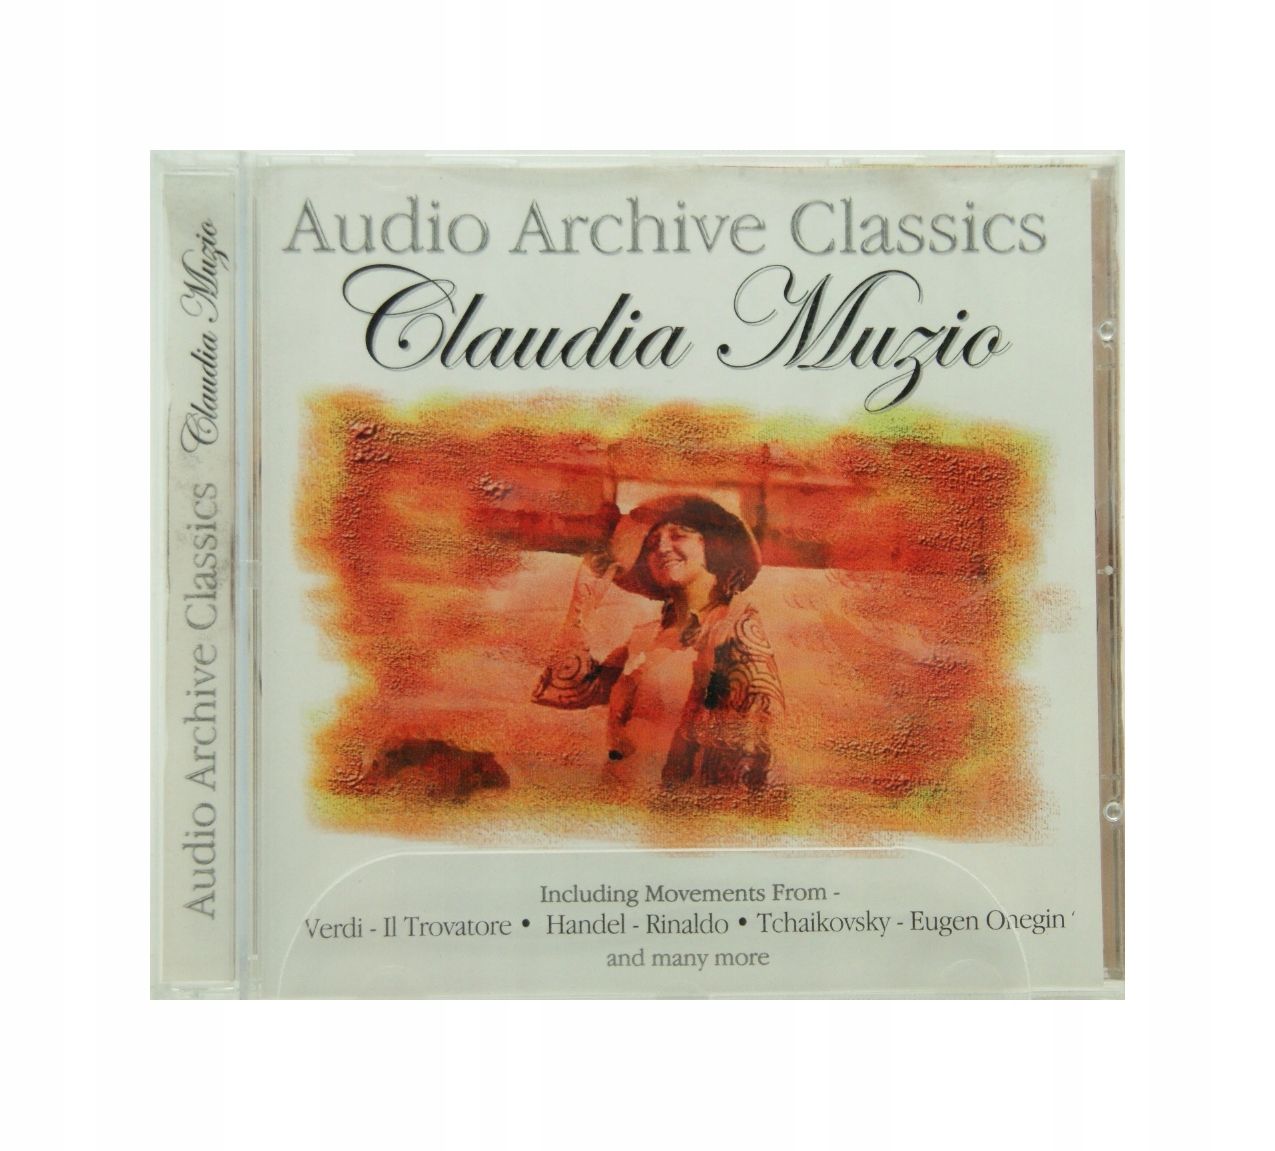 Cd - Audio Archive Classics - Claudia Muzio